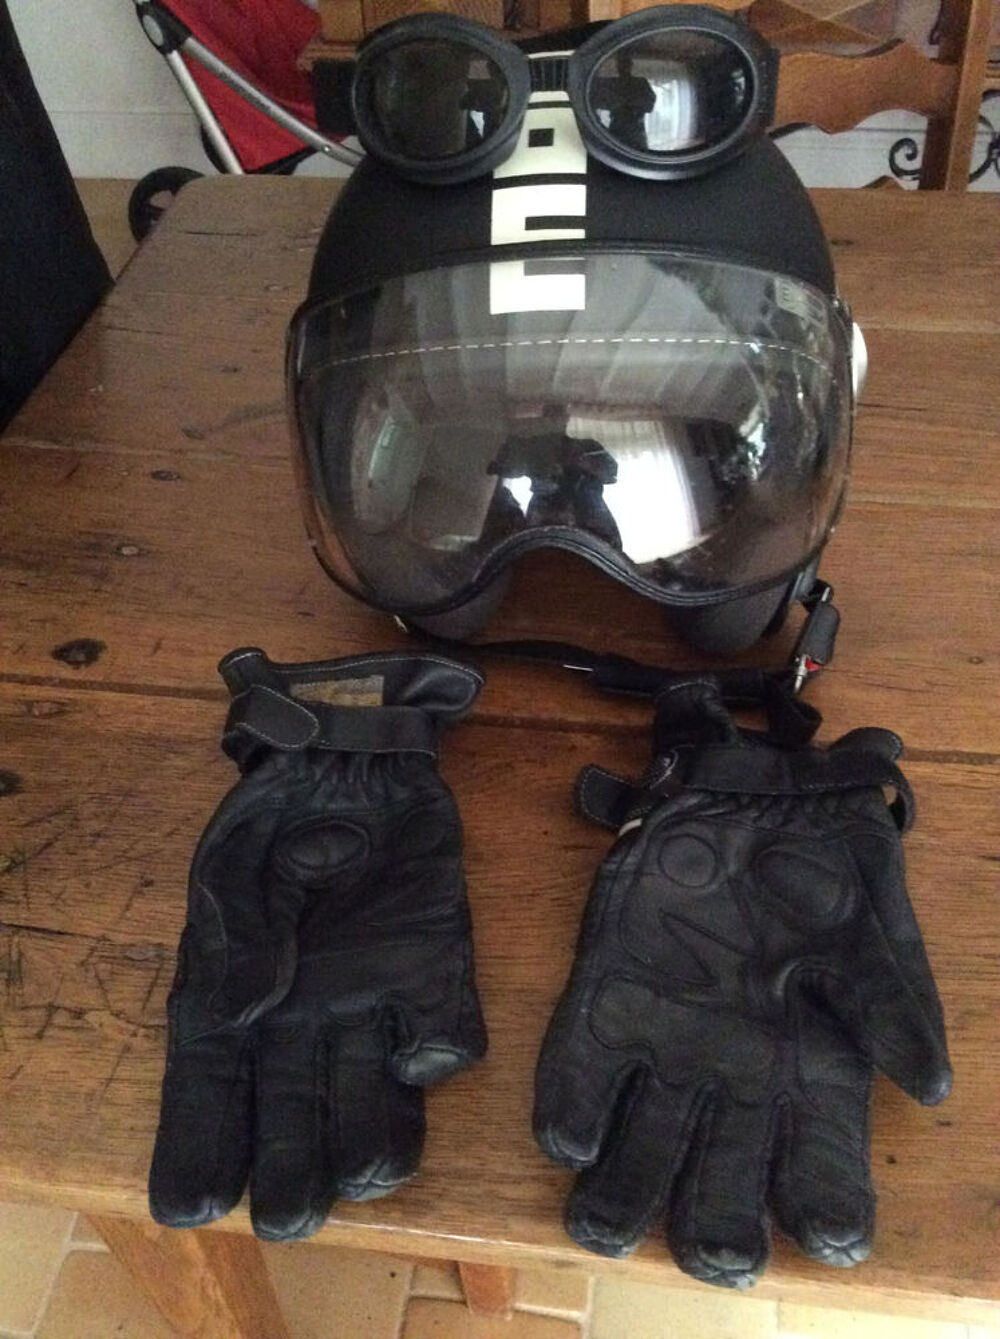 Moto : casque, blouson, gants, lunettes Femme
Sports